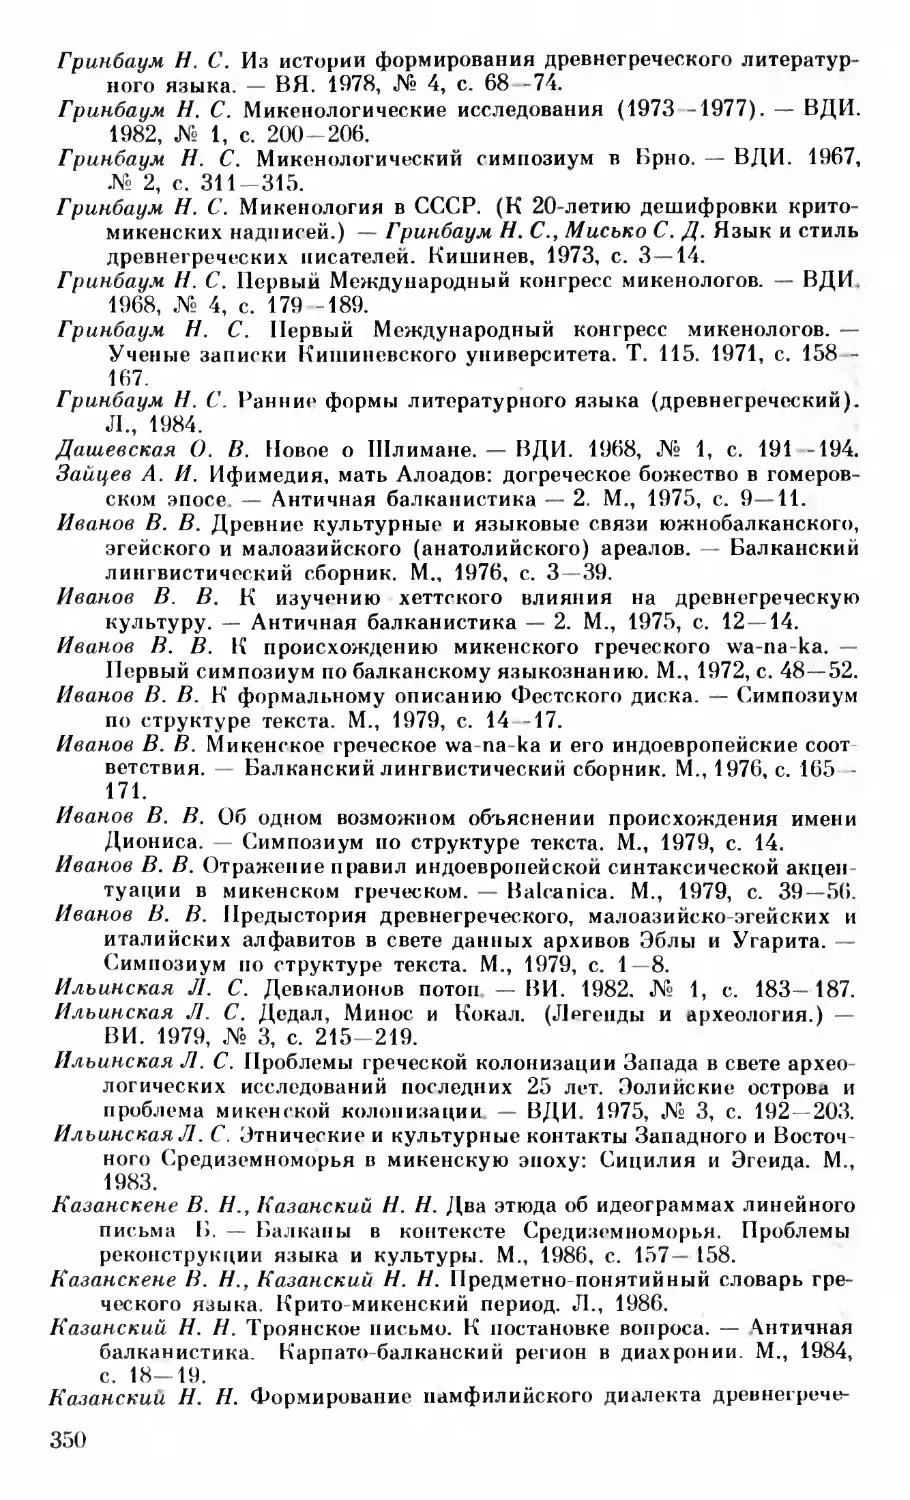 Приложение 2. Работы по микенологической тематике, опубликованные на русском языке в 1966-1989 гг.